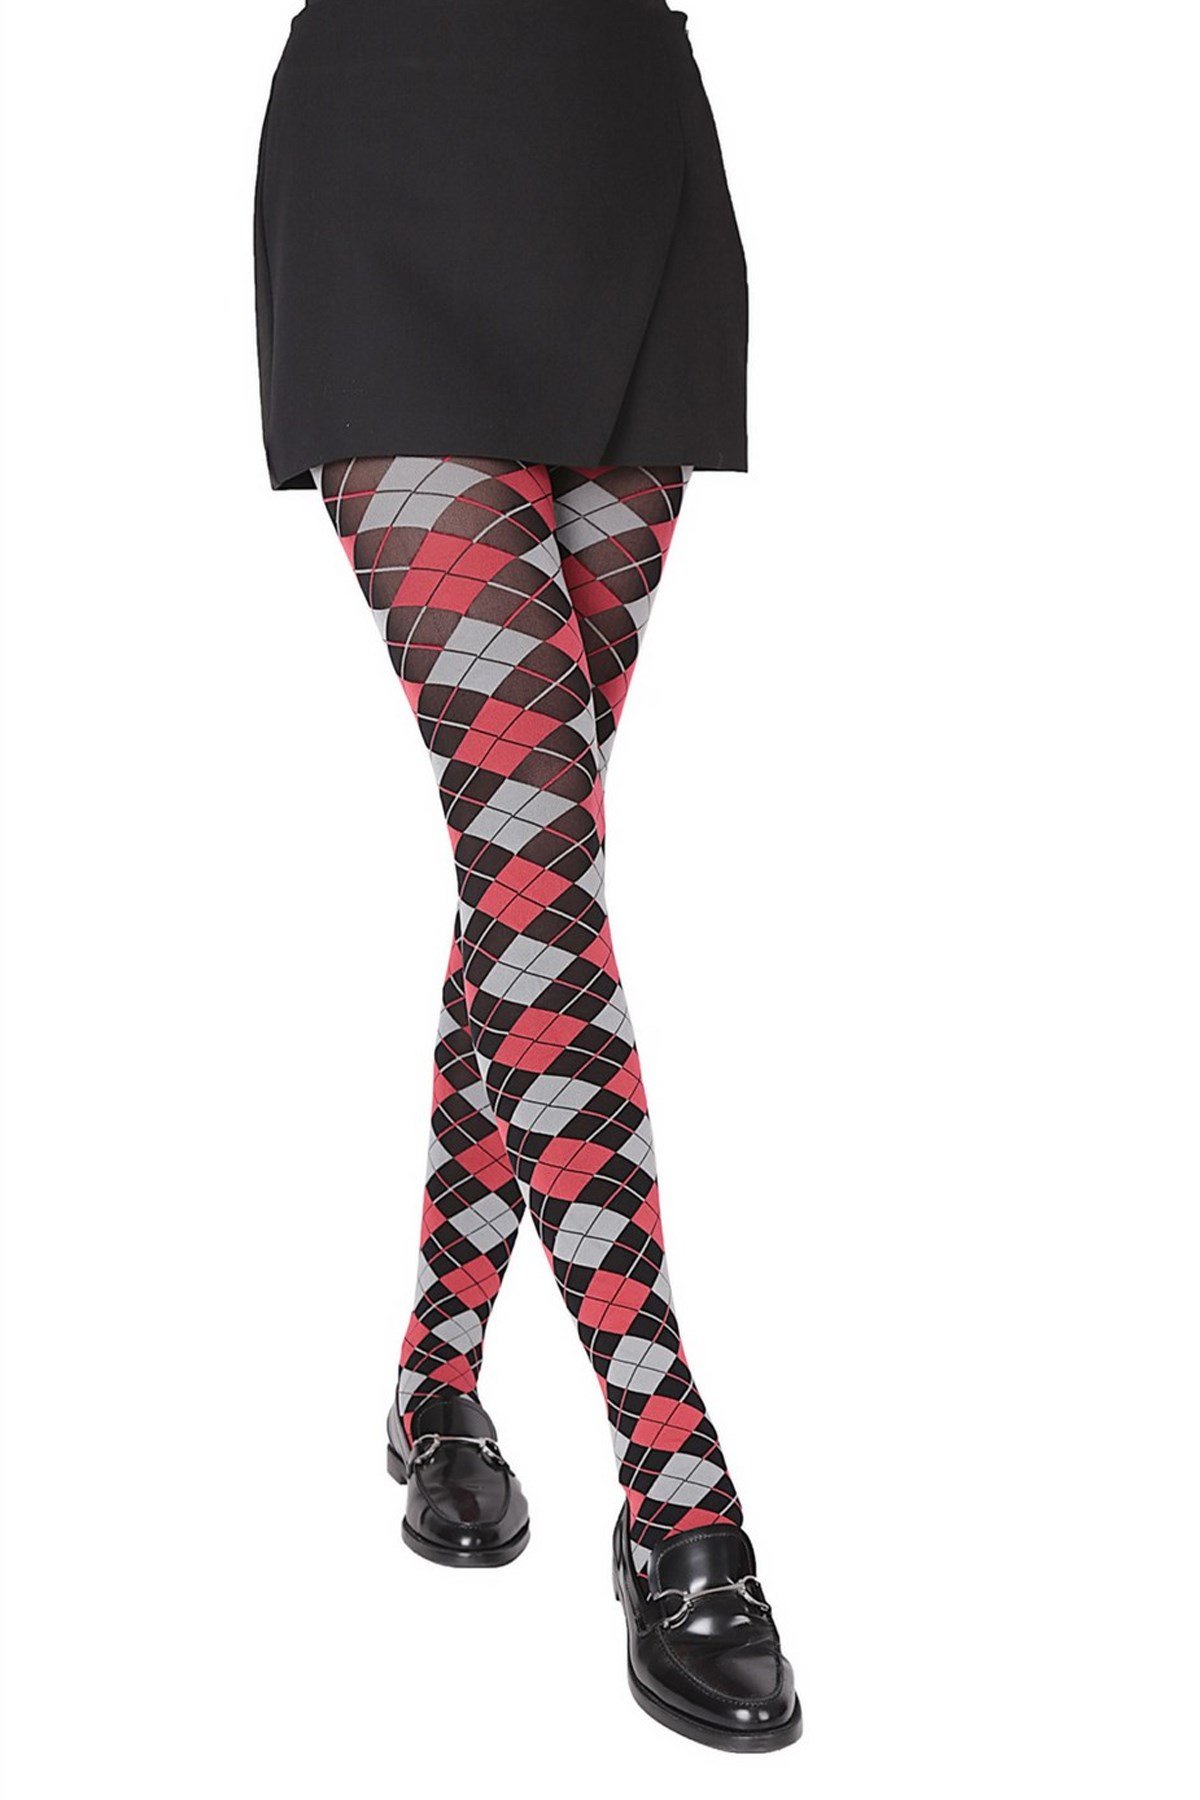 Daymod Veron Kadın Desenli Micro Külotlu Çorap Yeni Sezon! Moda! Ürünler  Rakipsiz Fiyatlar İç Giyim, Ev Tekstili, Kozmetik, Çeyiz ve Daha Fazlası |  yoncatoptan.com